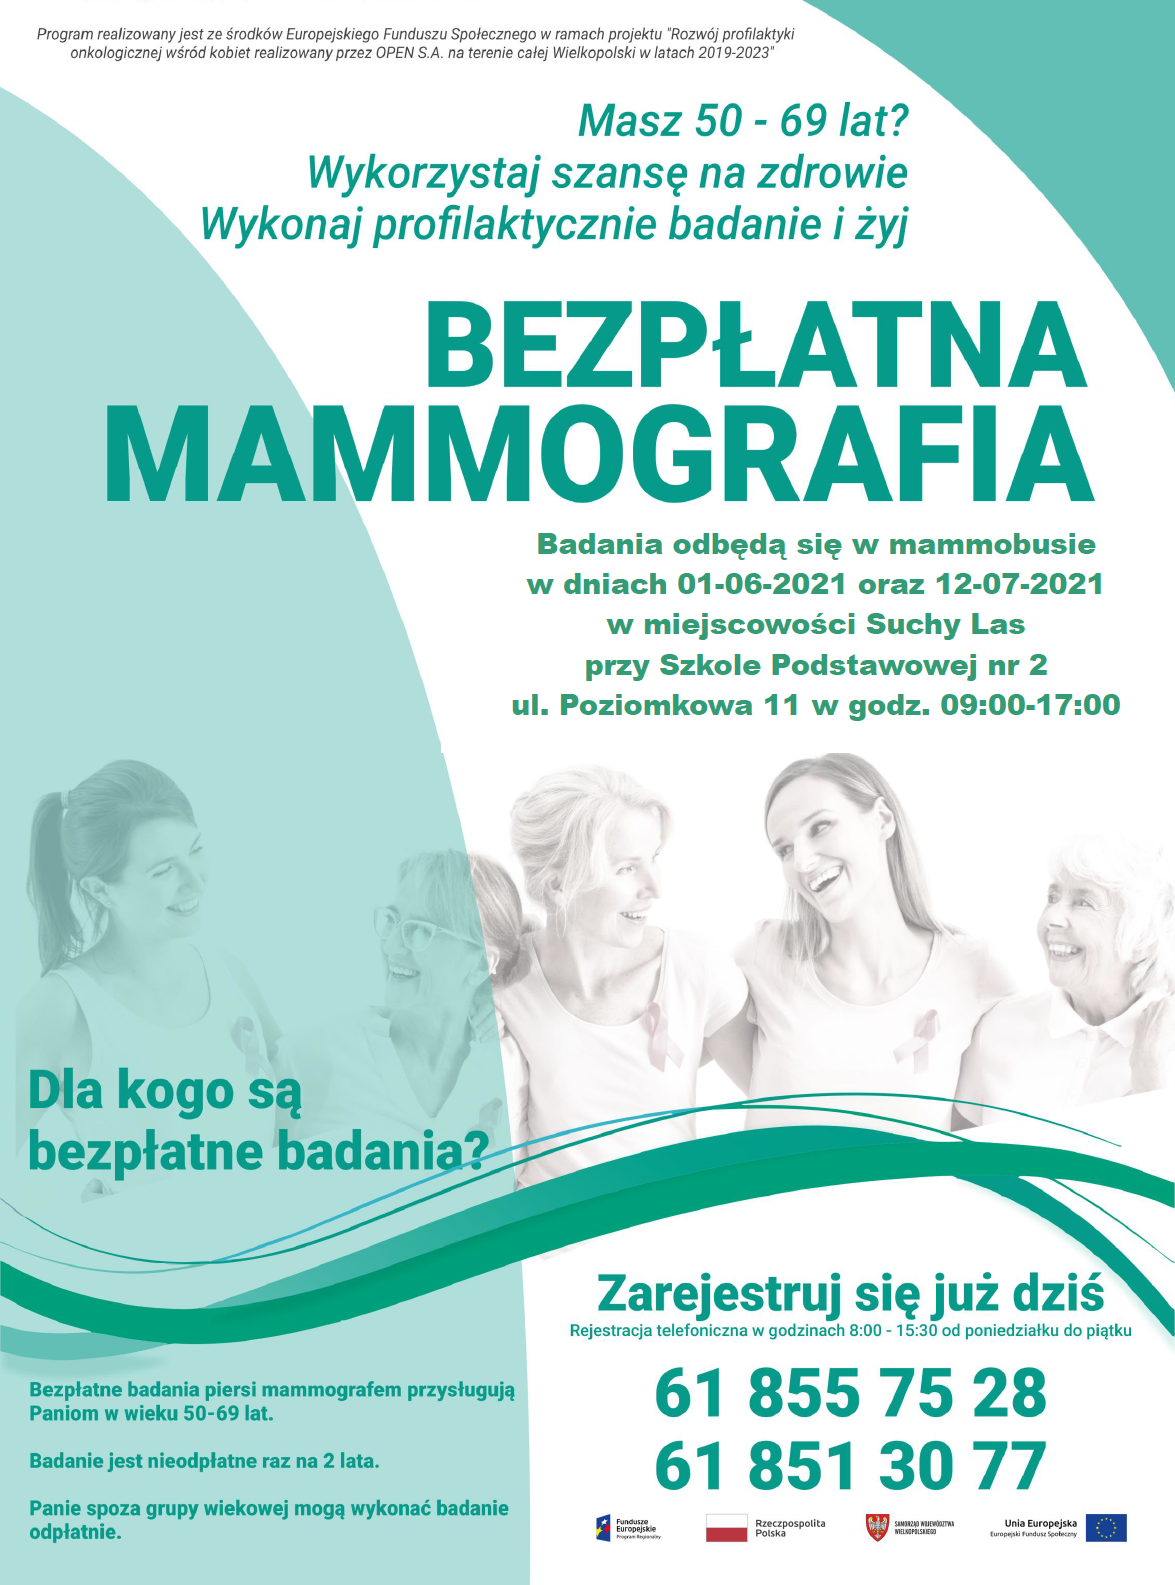 mammografia - Bezpłatna mammografia. Nie odkładaj, skorzystaj!